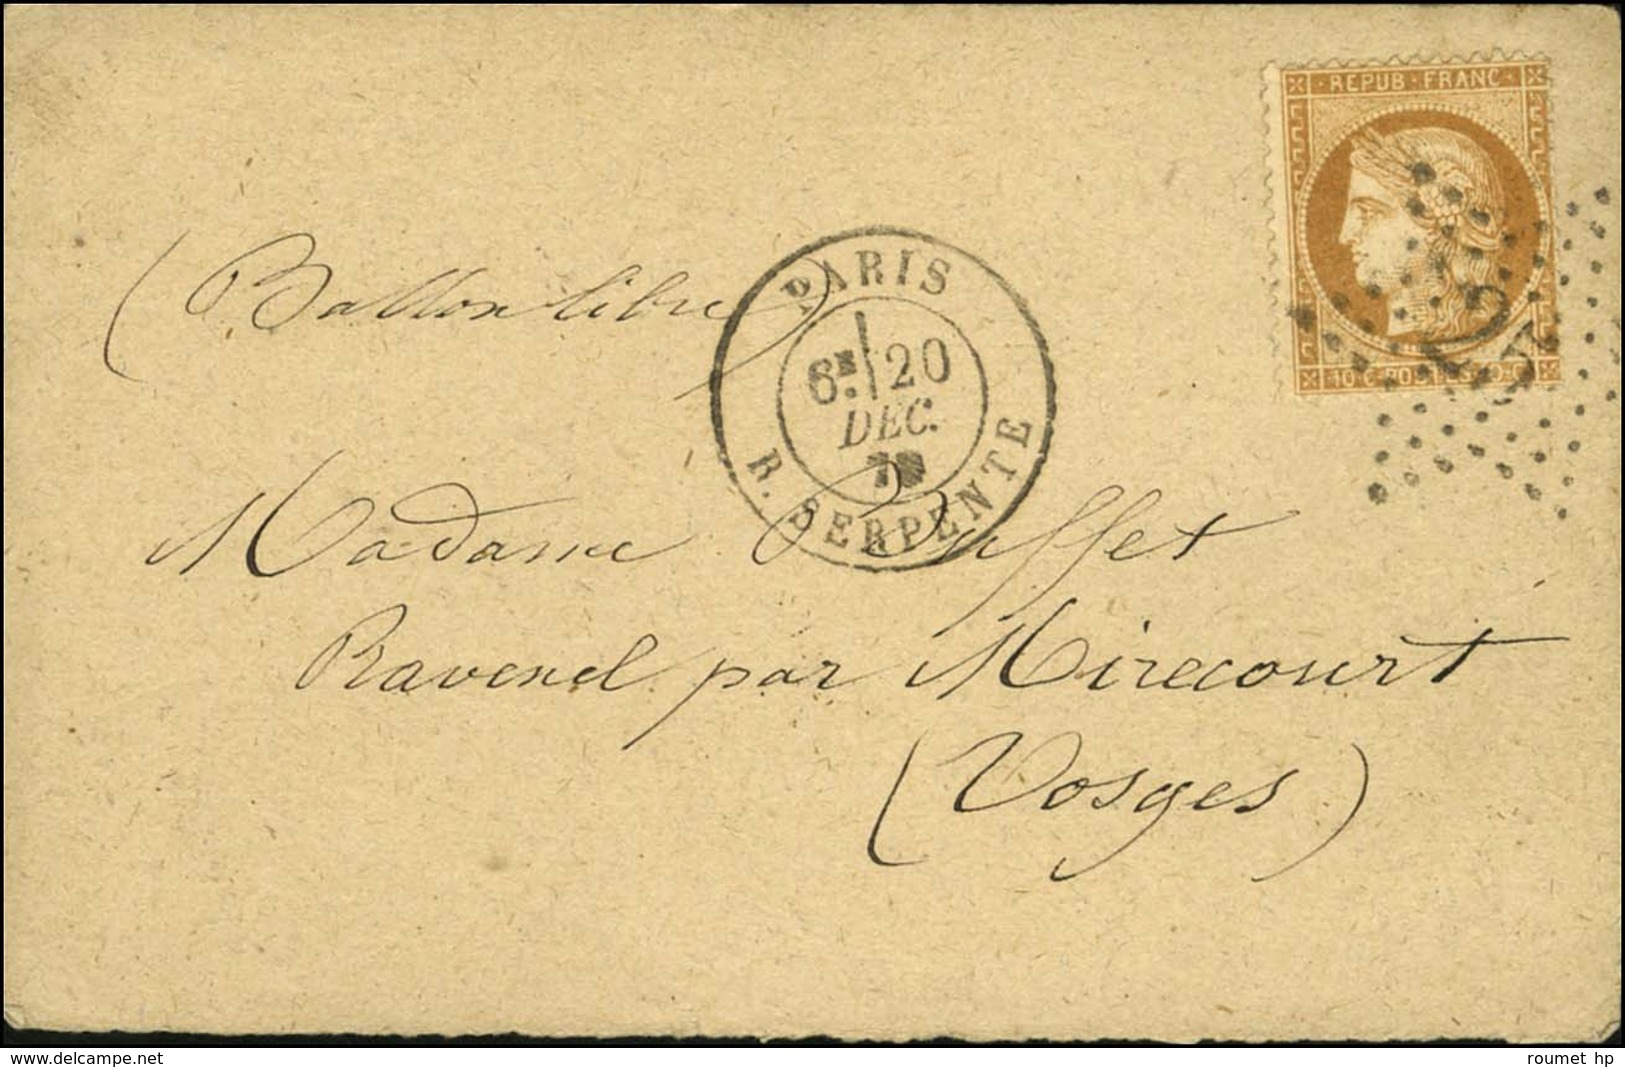 Etoile 25 / N° 36 Càd PARIS / R. SERPENTE 20 DEC. 70 Sur Carte Pour Mirecourt. Au Verso, Càd D'arrivée (date Illisible). - War 1870